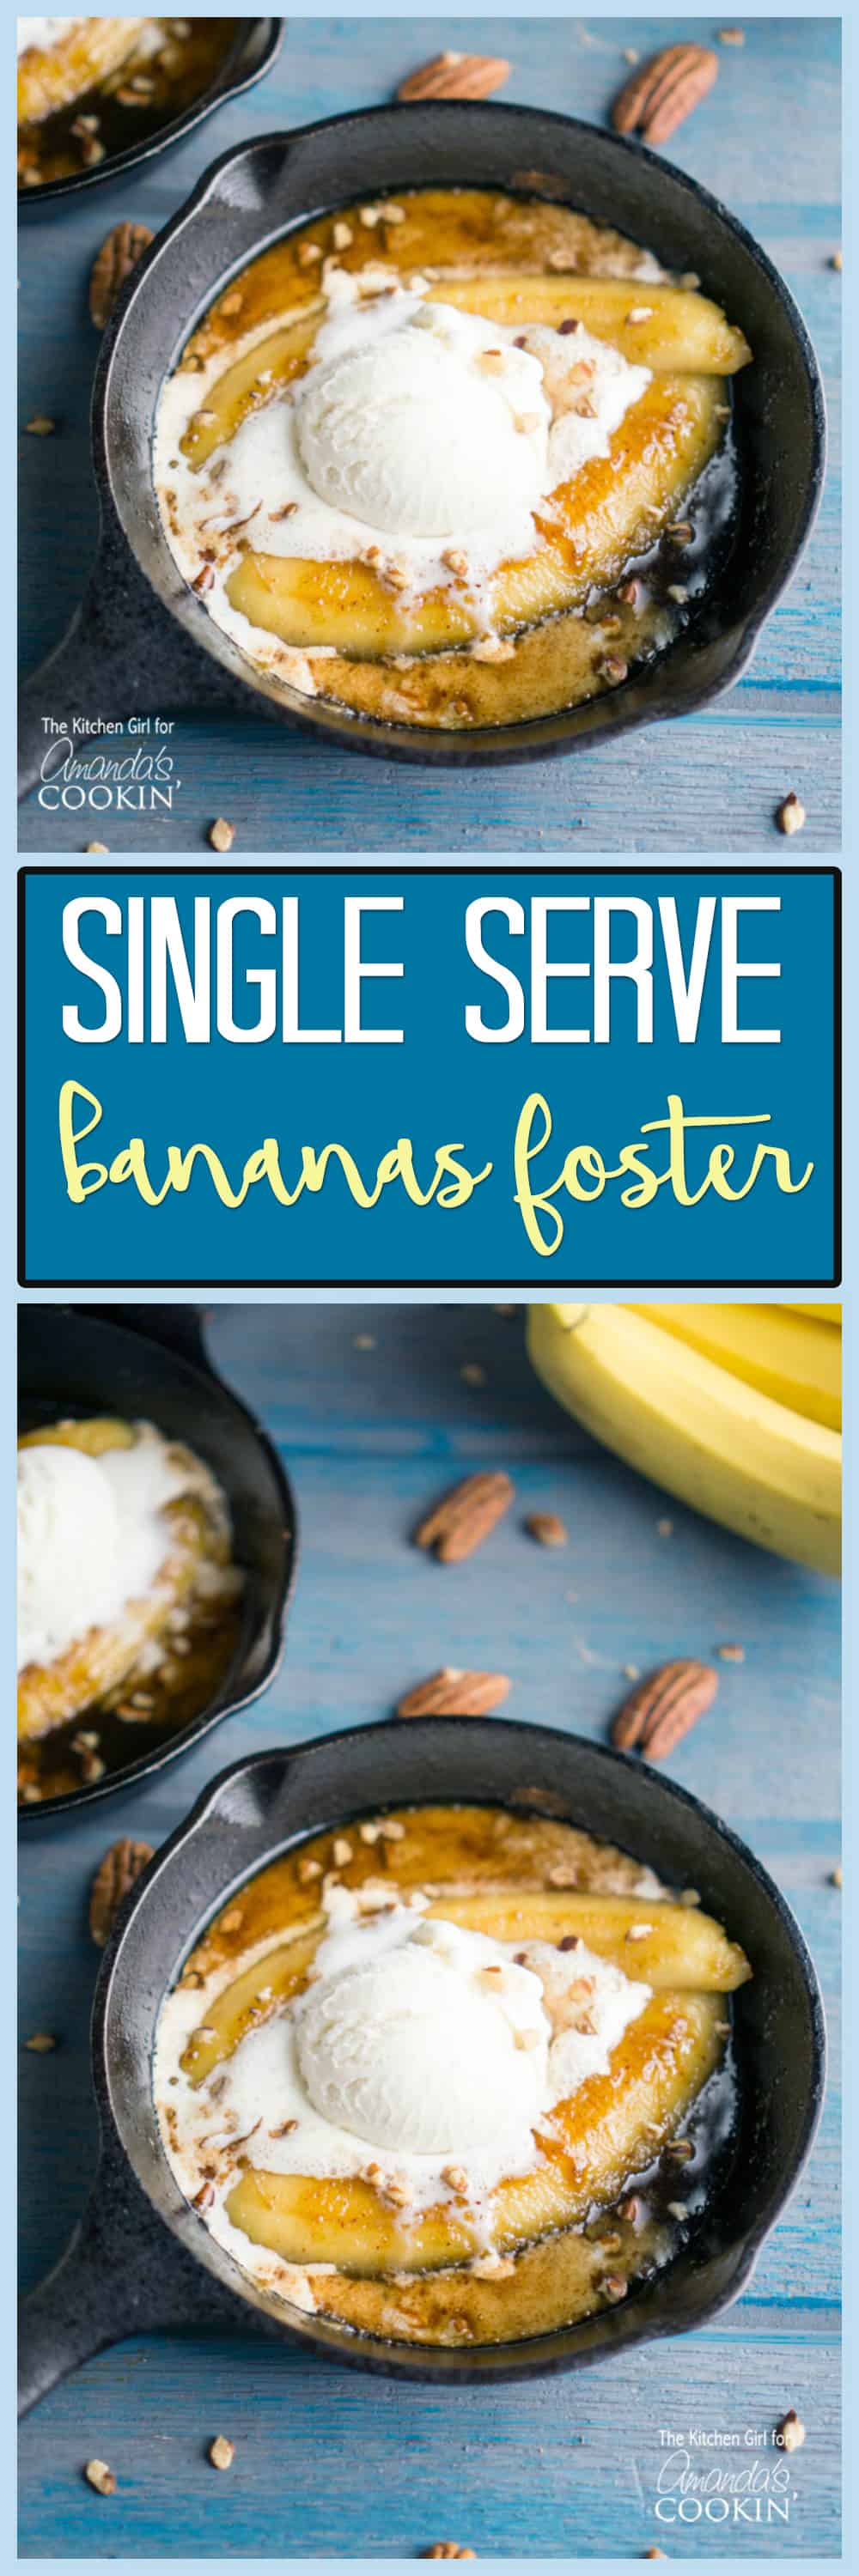 Photos of single serve bananas foster.